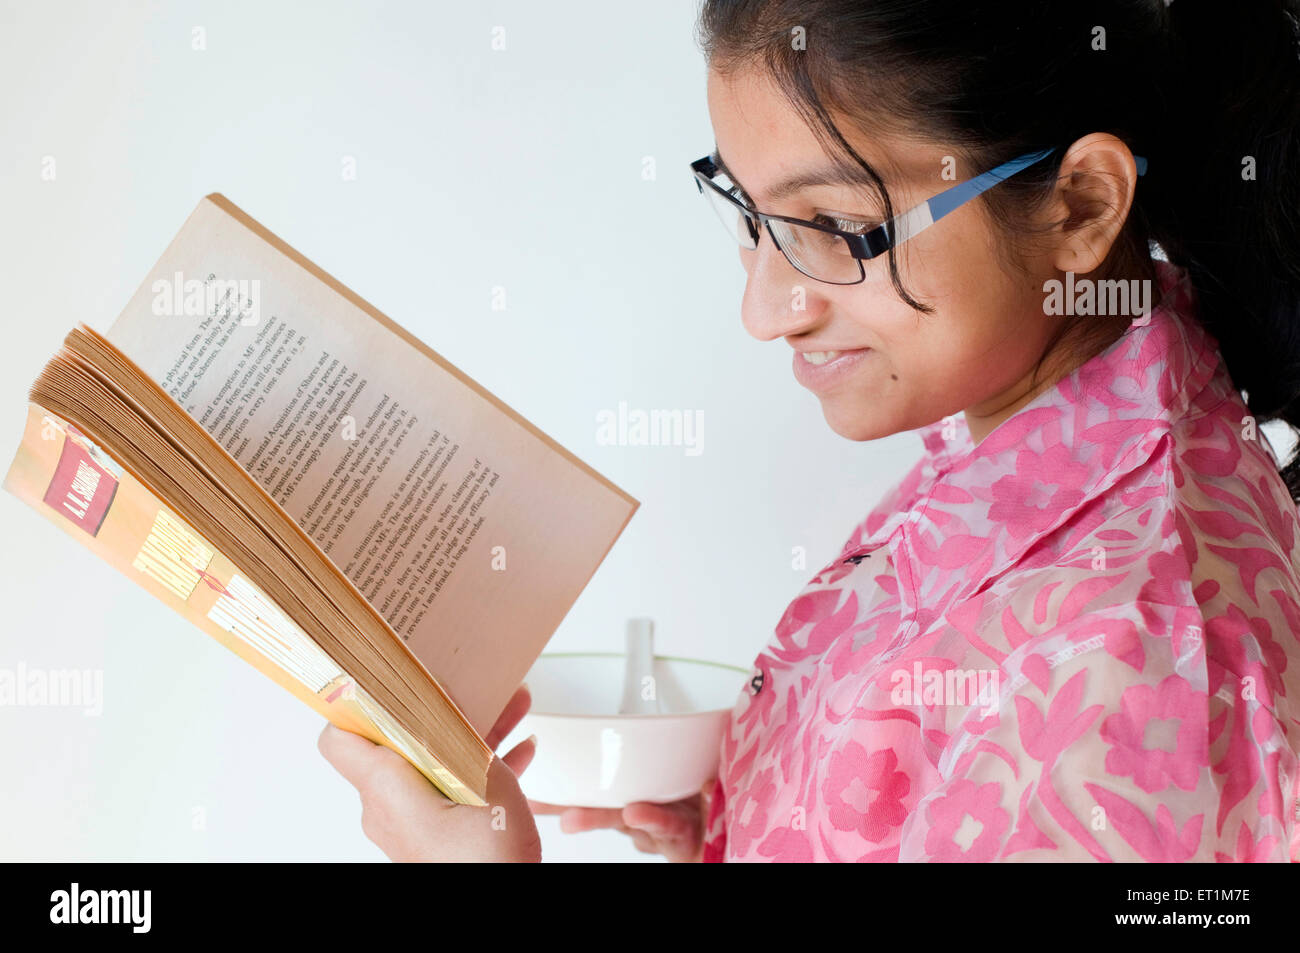 Ein Mädchen hält eine leere Schüssel und lesen die Buch Pune Maharashtra Indien Asien Herr #686EE Stockfoto